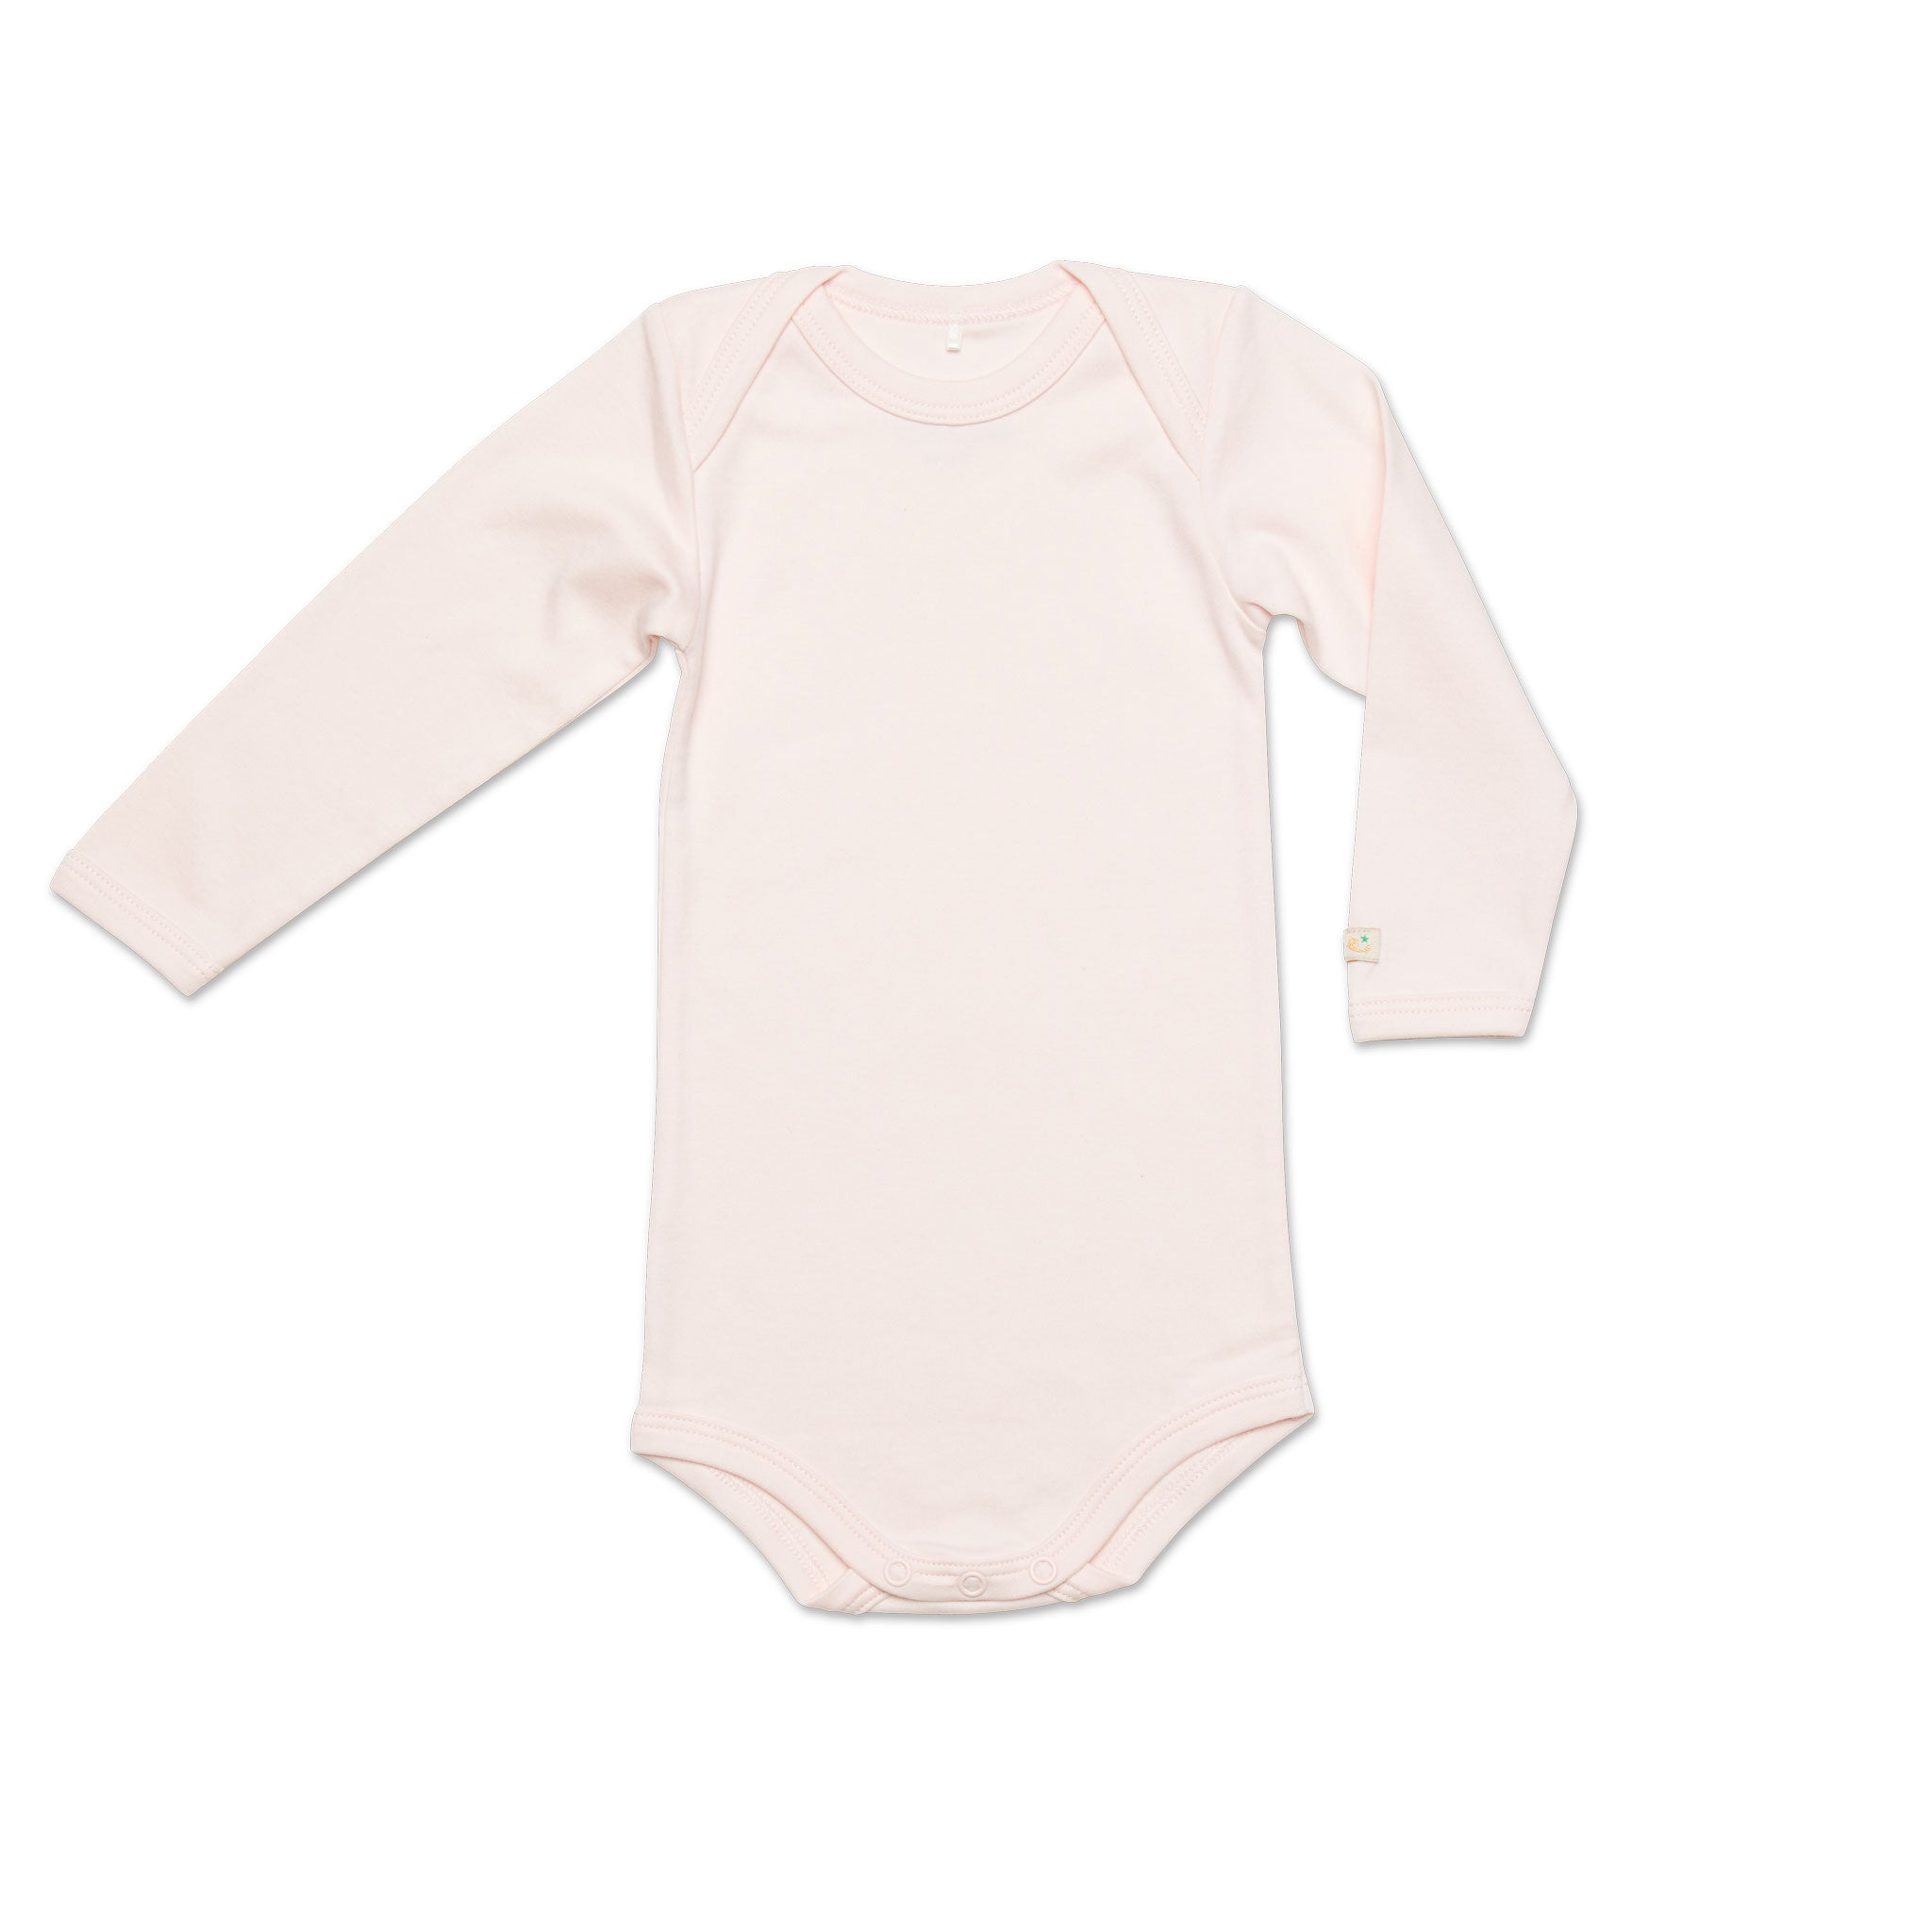 Rosa body för baby med fina detaljer. Ekologiska babykläder tillverkade i GOTS-certifierad pimabomull